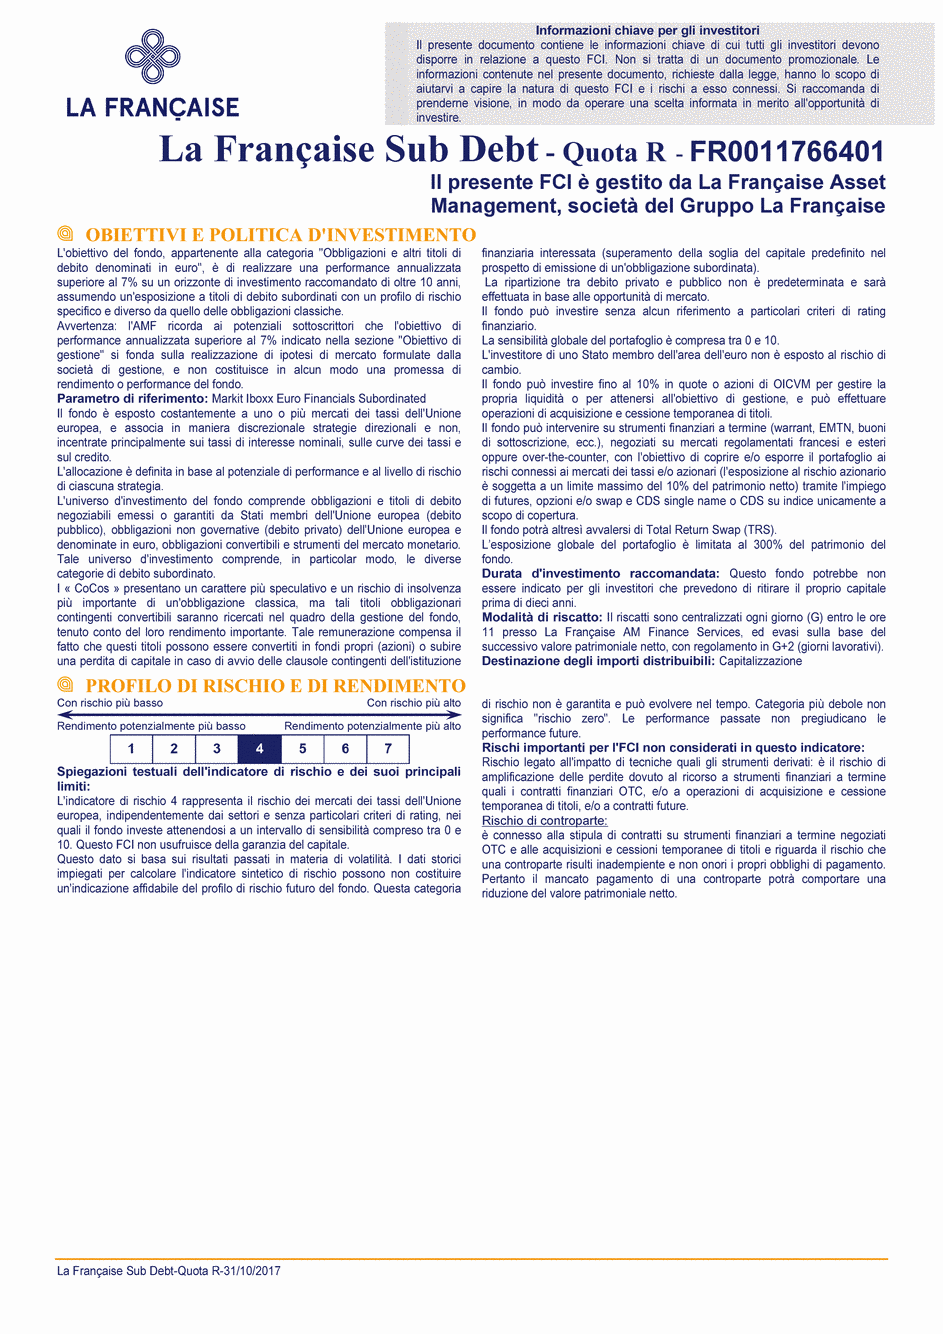 DICI La Française Sub Debt - Part R - 31/10/2017 - Italien